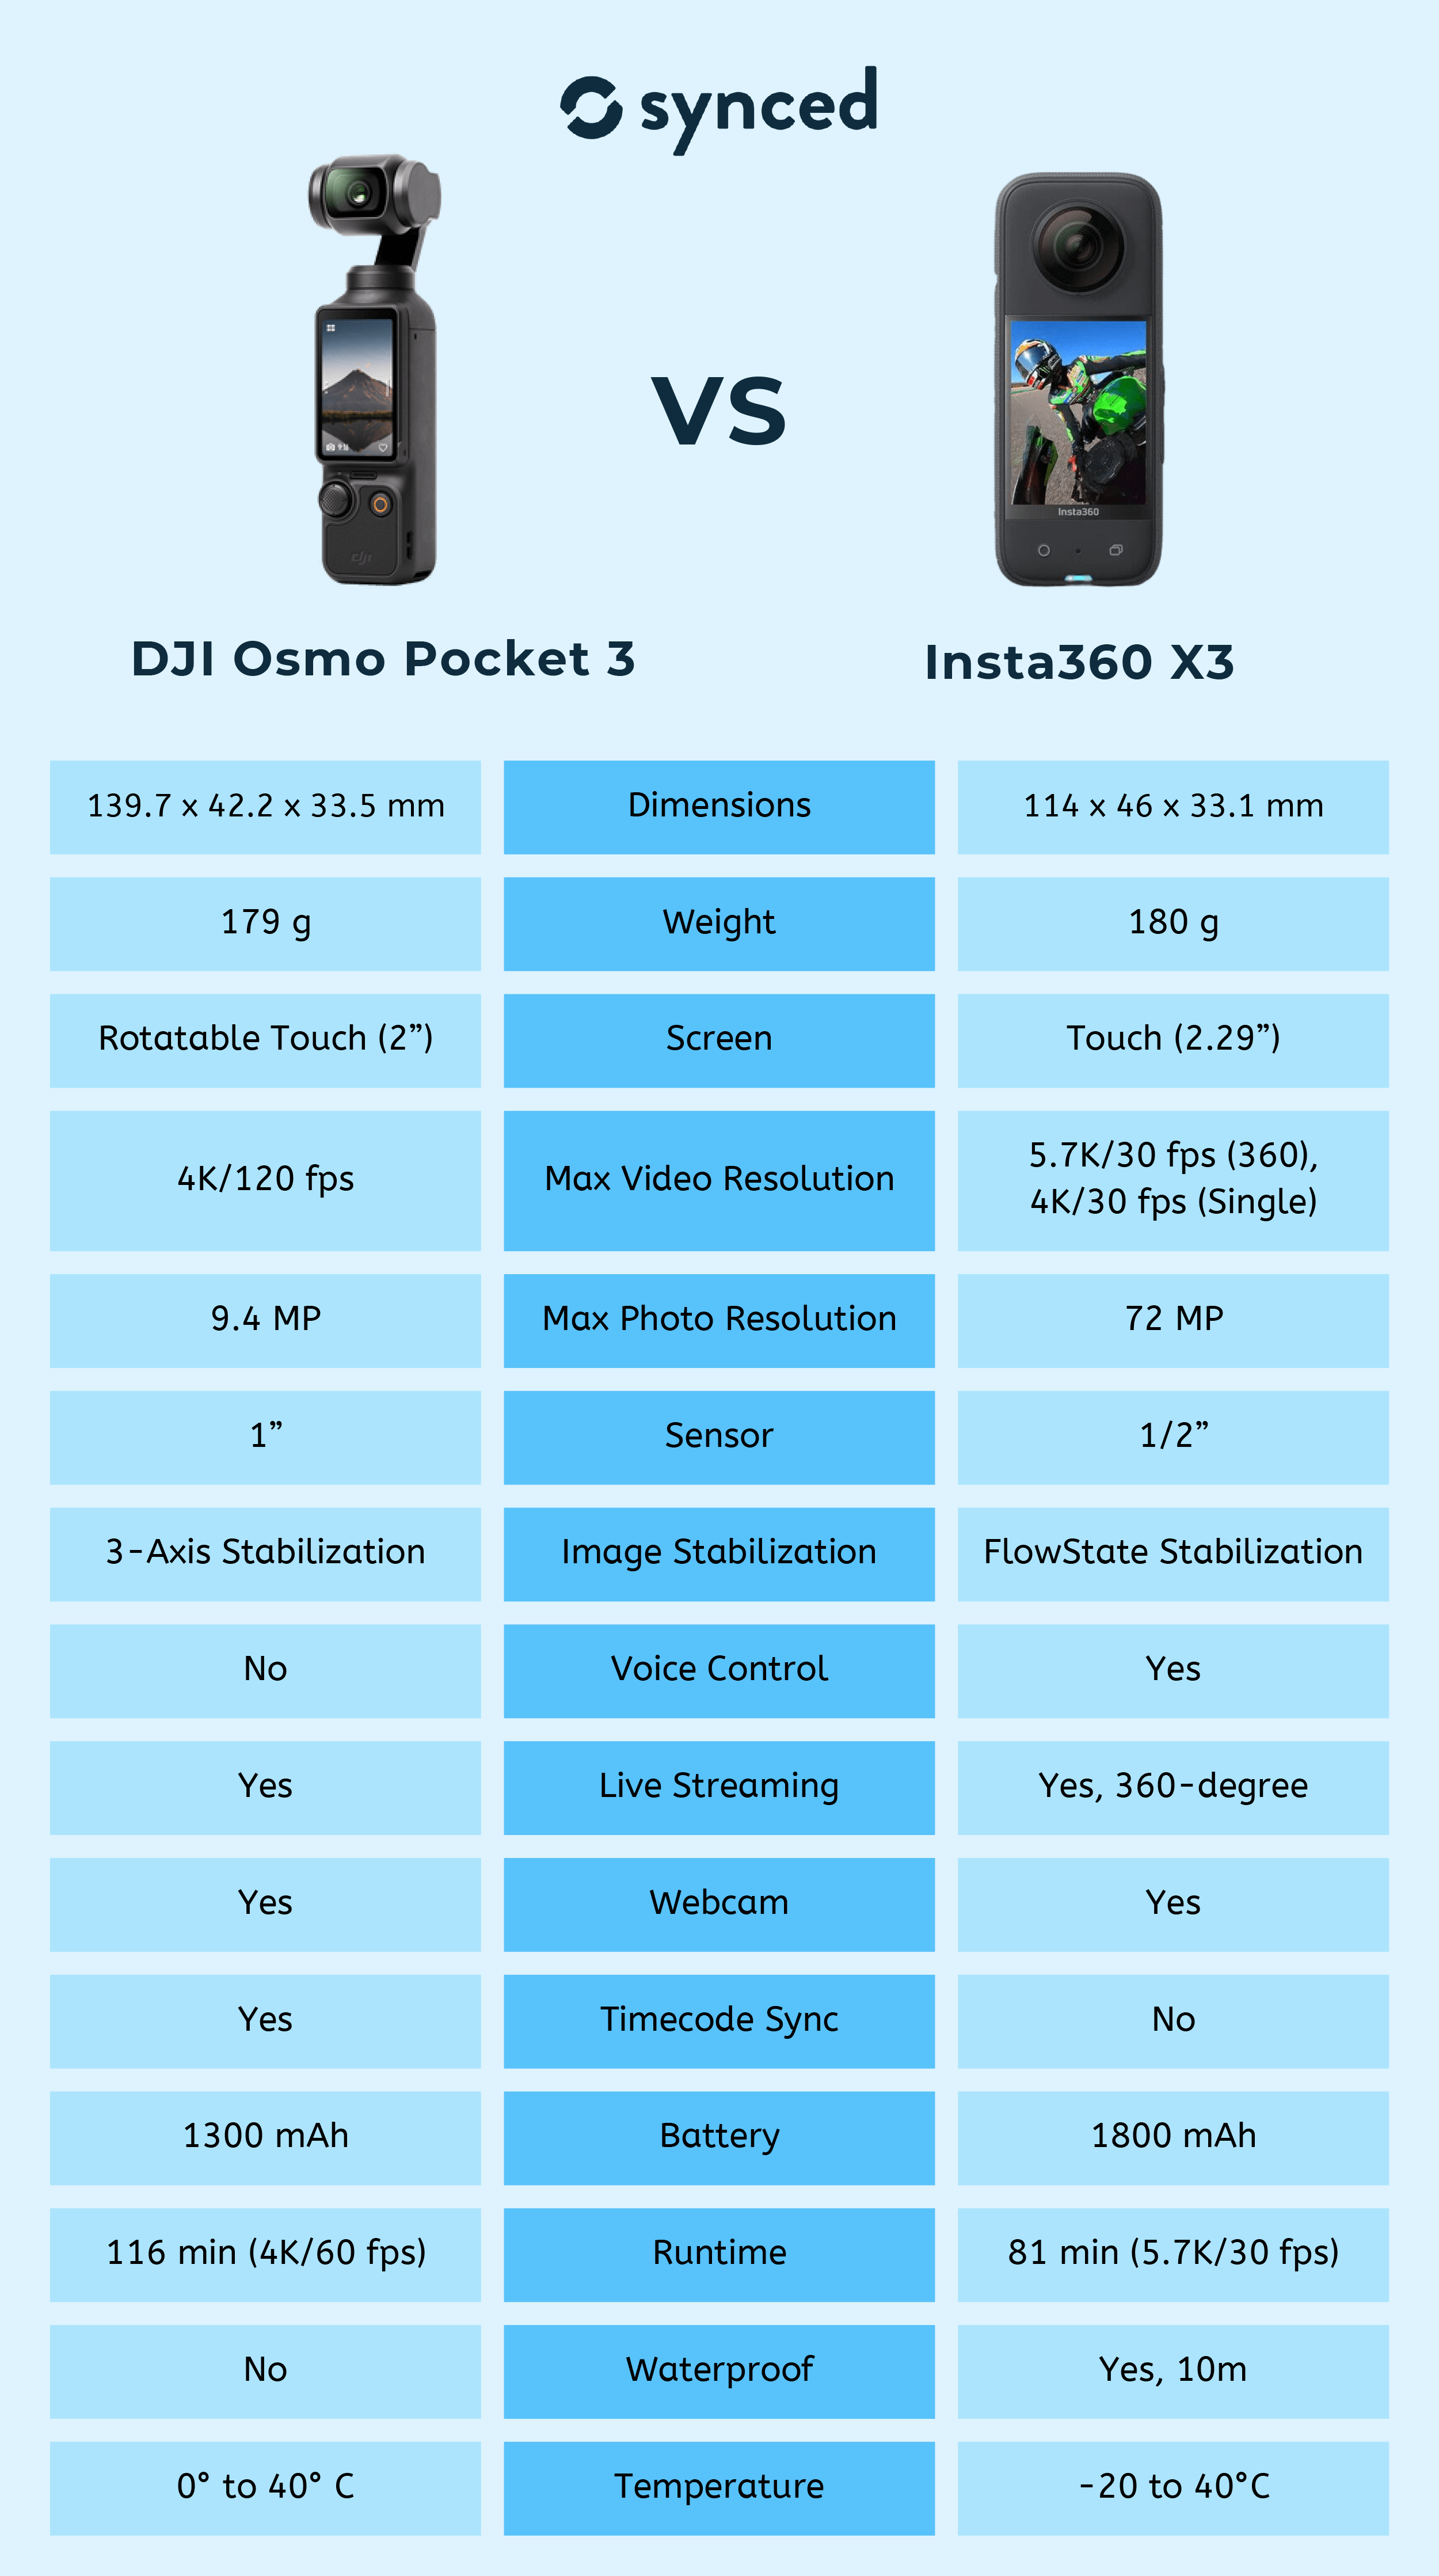 DJI Osmo Pocket 3 vs DJI Osmo Pocket 2: What's new?